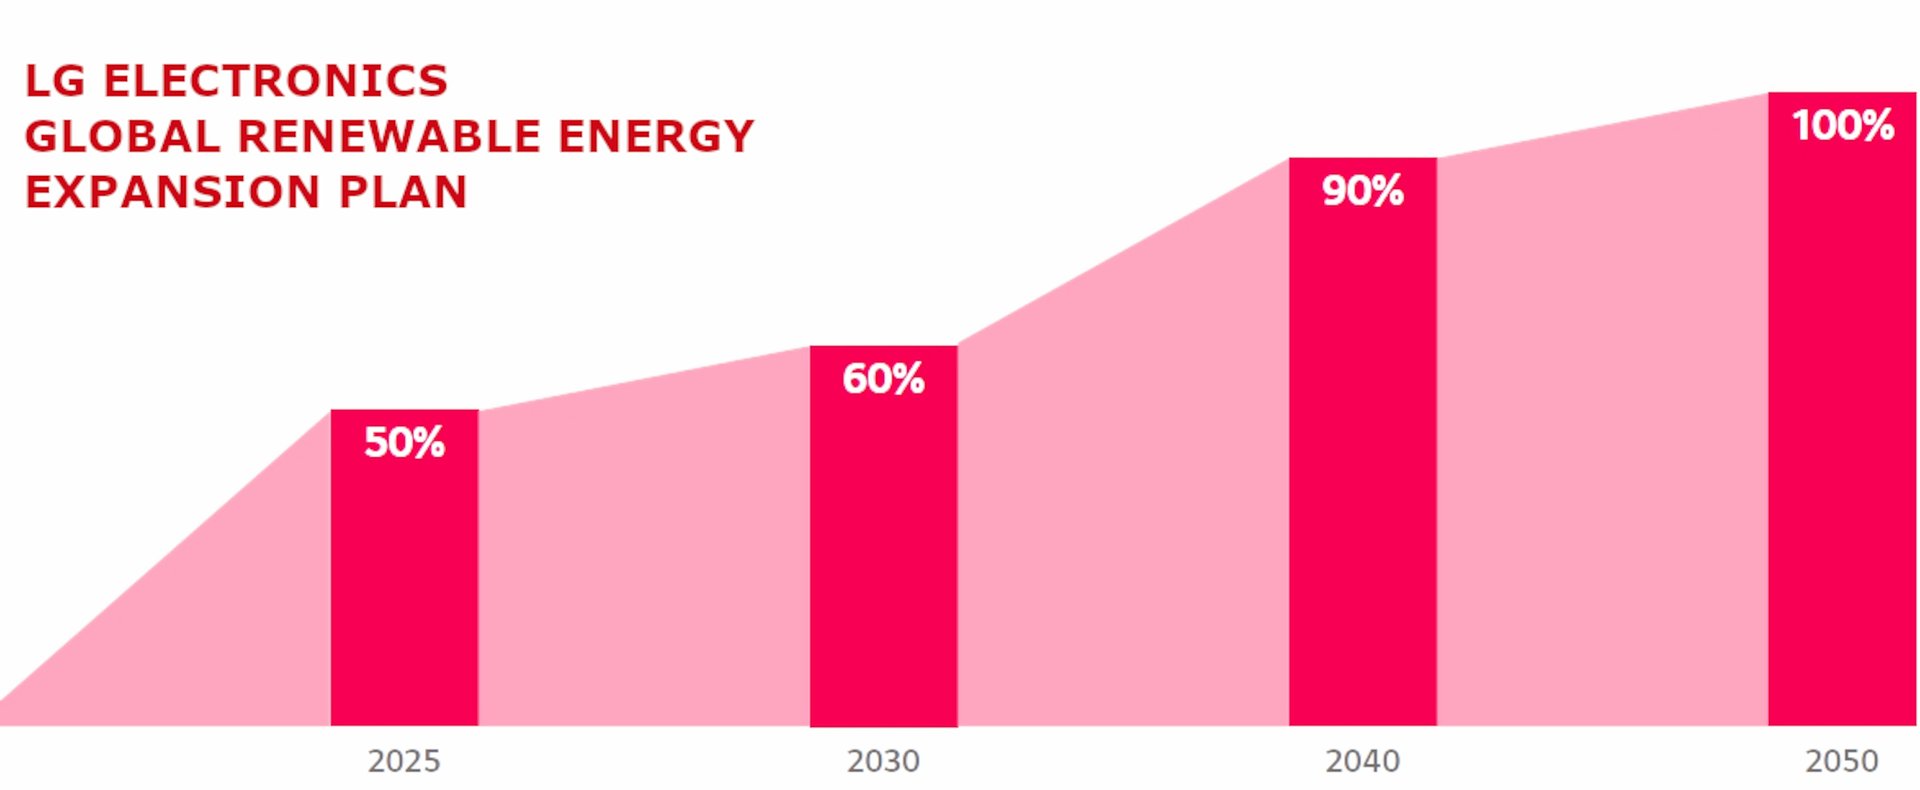 LG zobowiązuje się przejść w 100% na energię odnawialną do 2050 roku